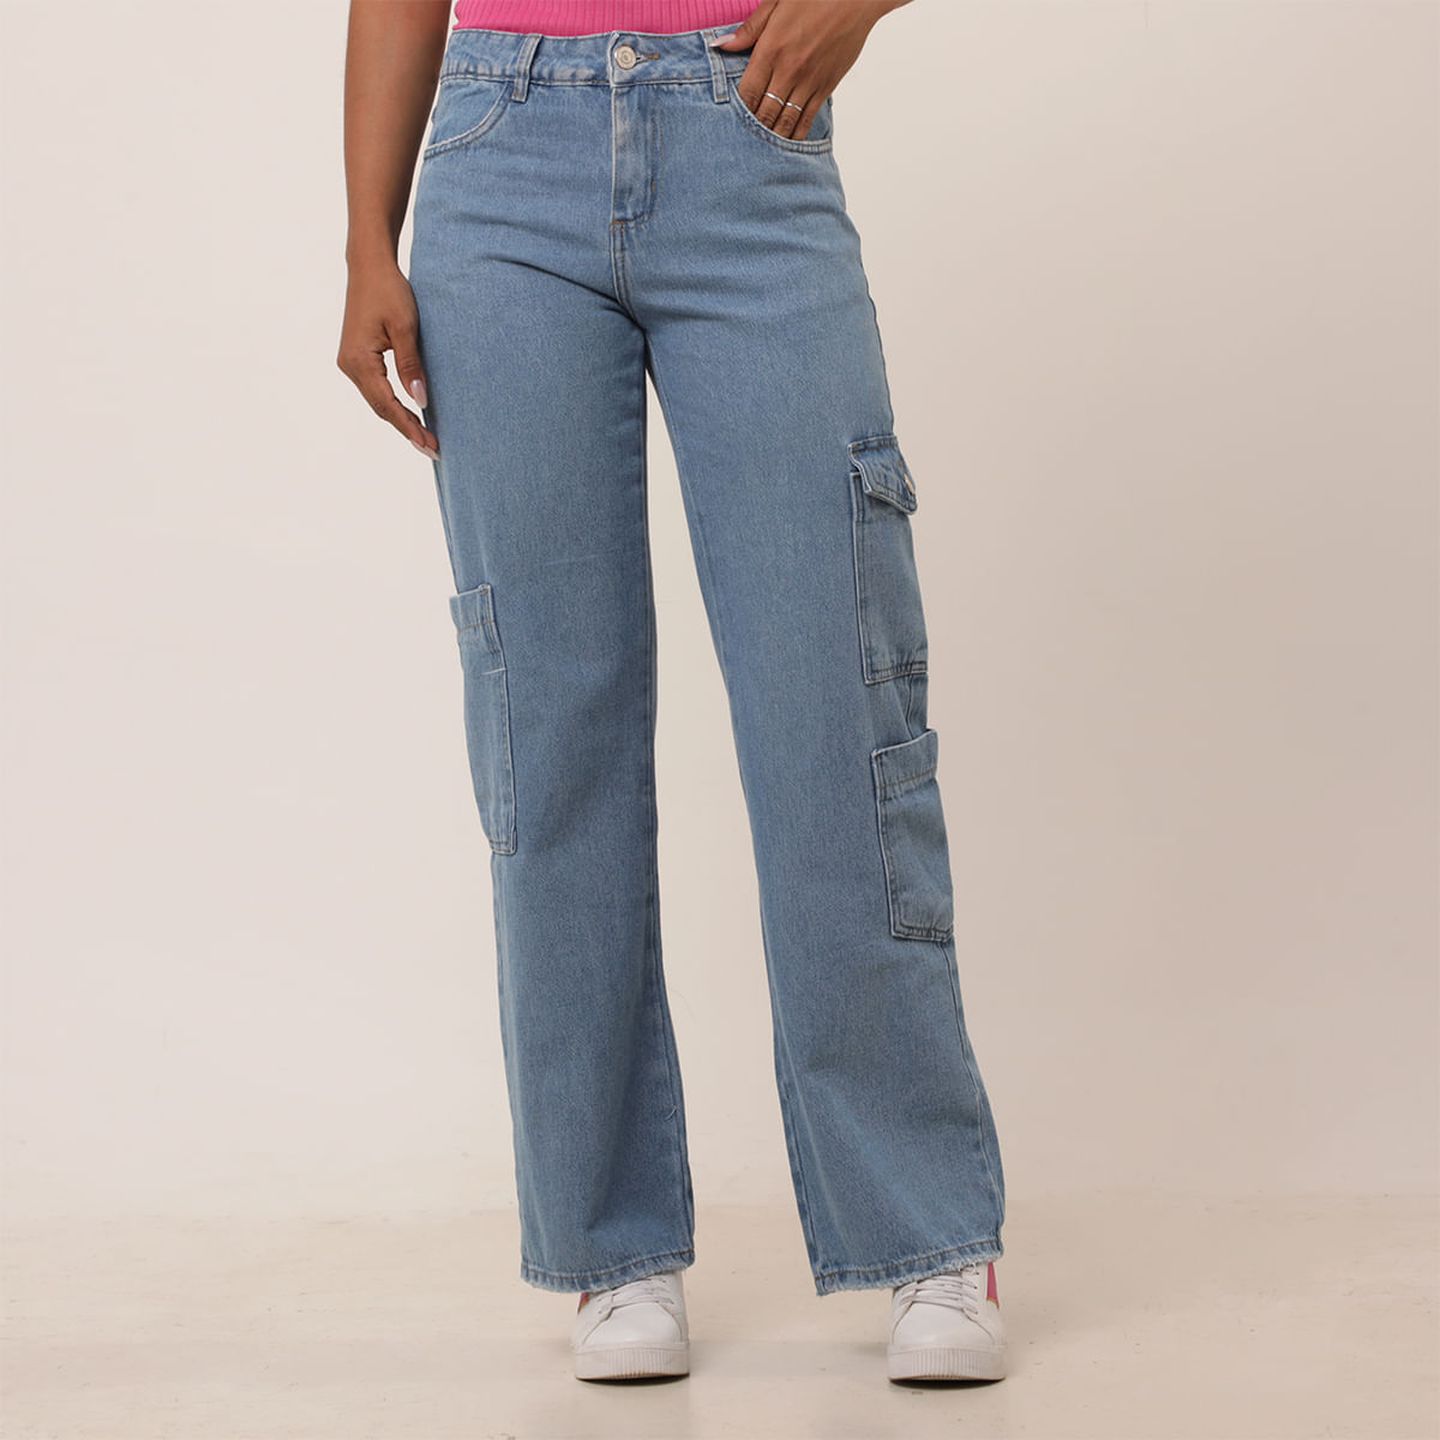 Calças Femininas: Calça Jogger, Jeans, Pantalona